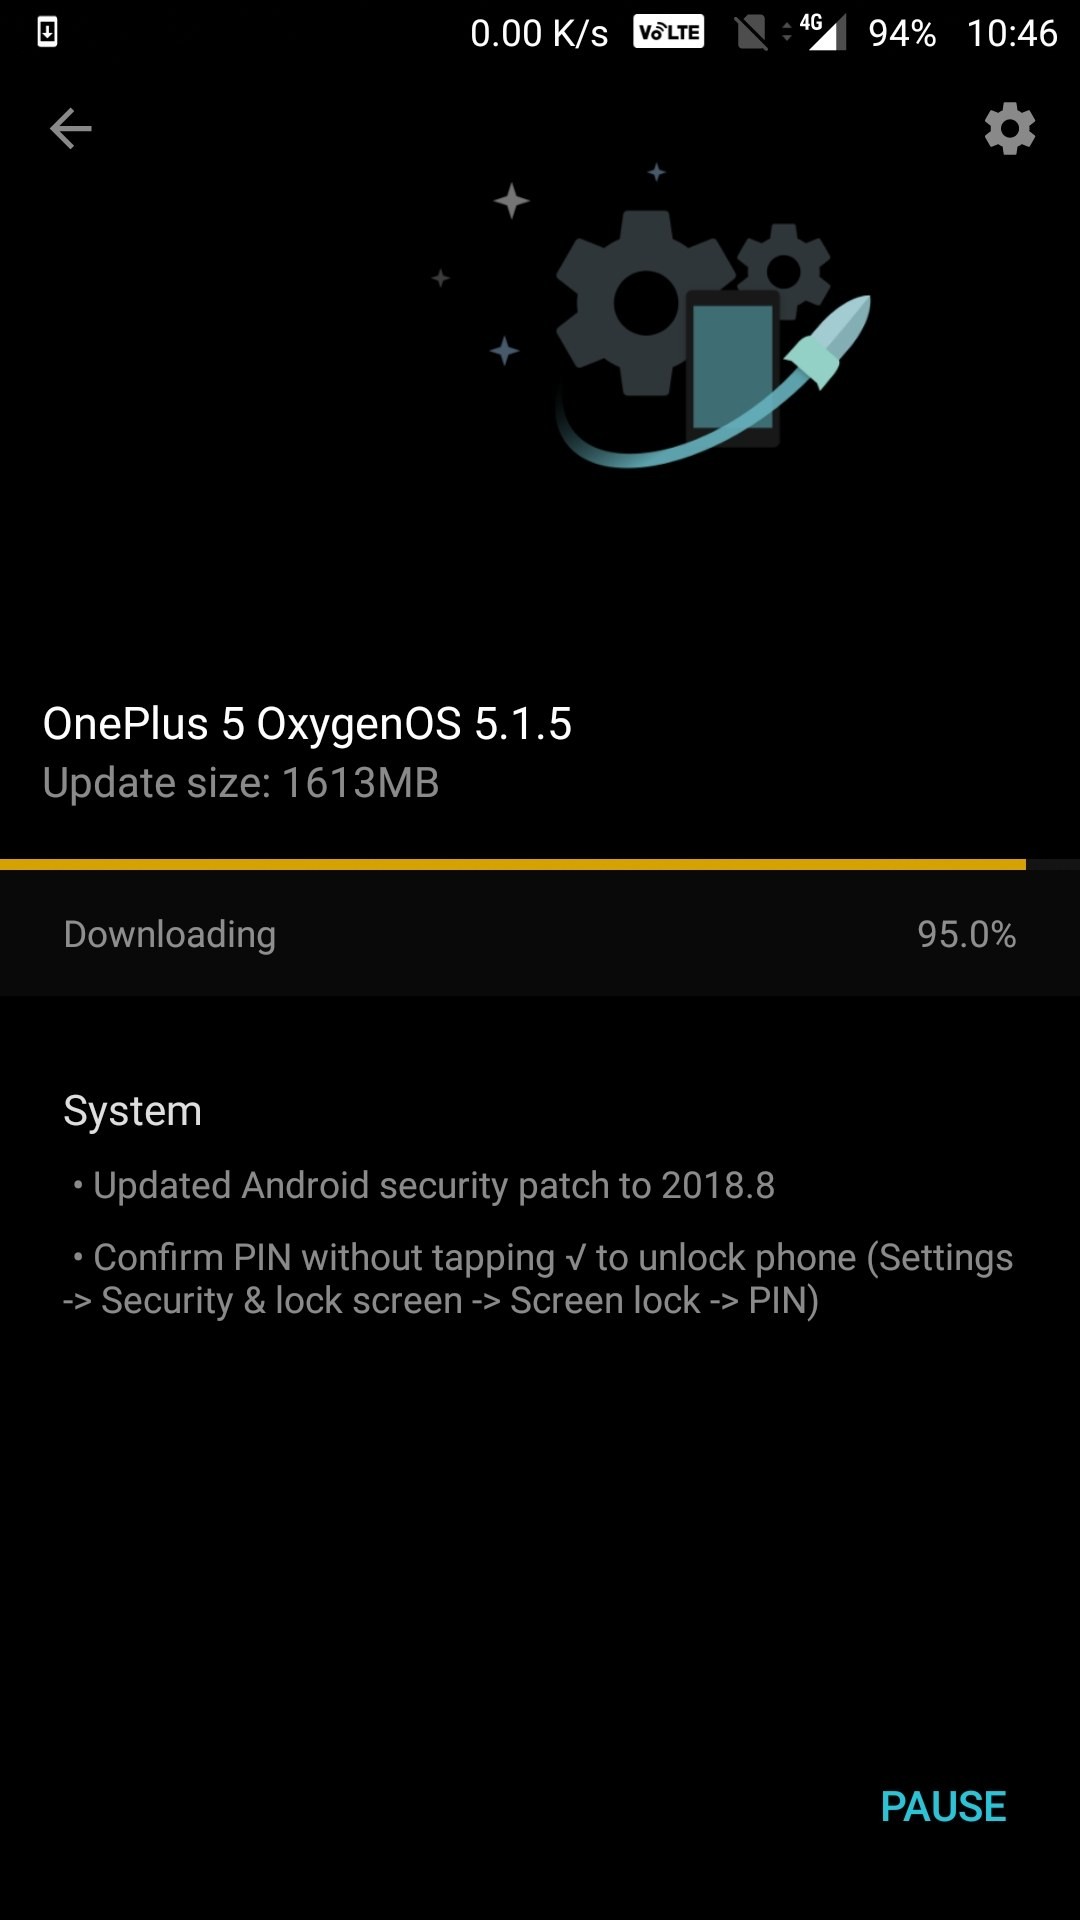 OxygenOS 5.1.5 para OnePlus 5 y 5T agrega compatibilidad con Project Treble y desbloqueo directo mediante PIN